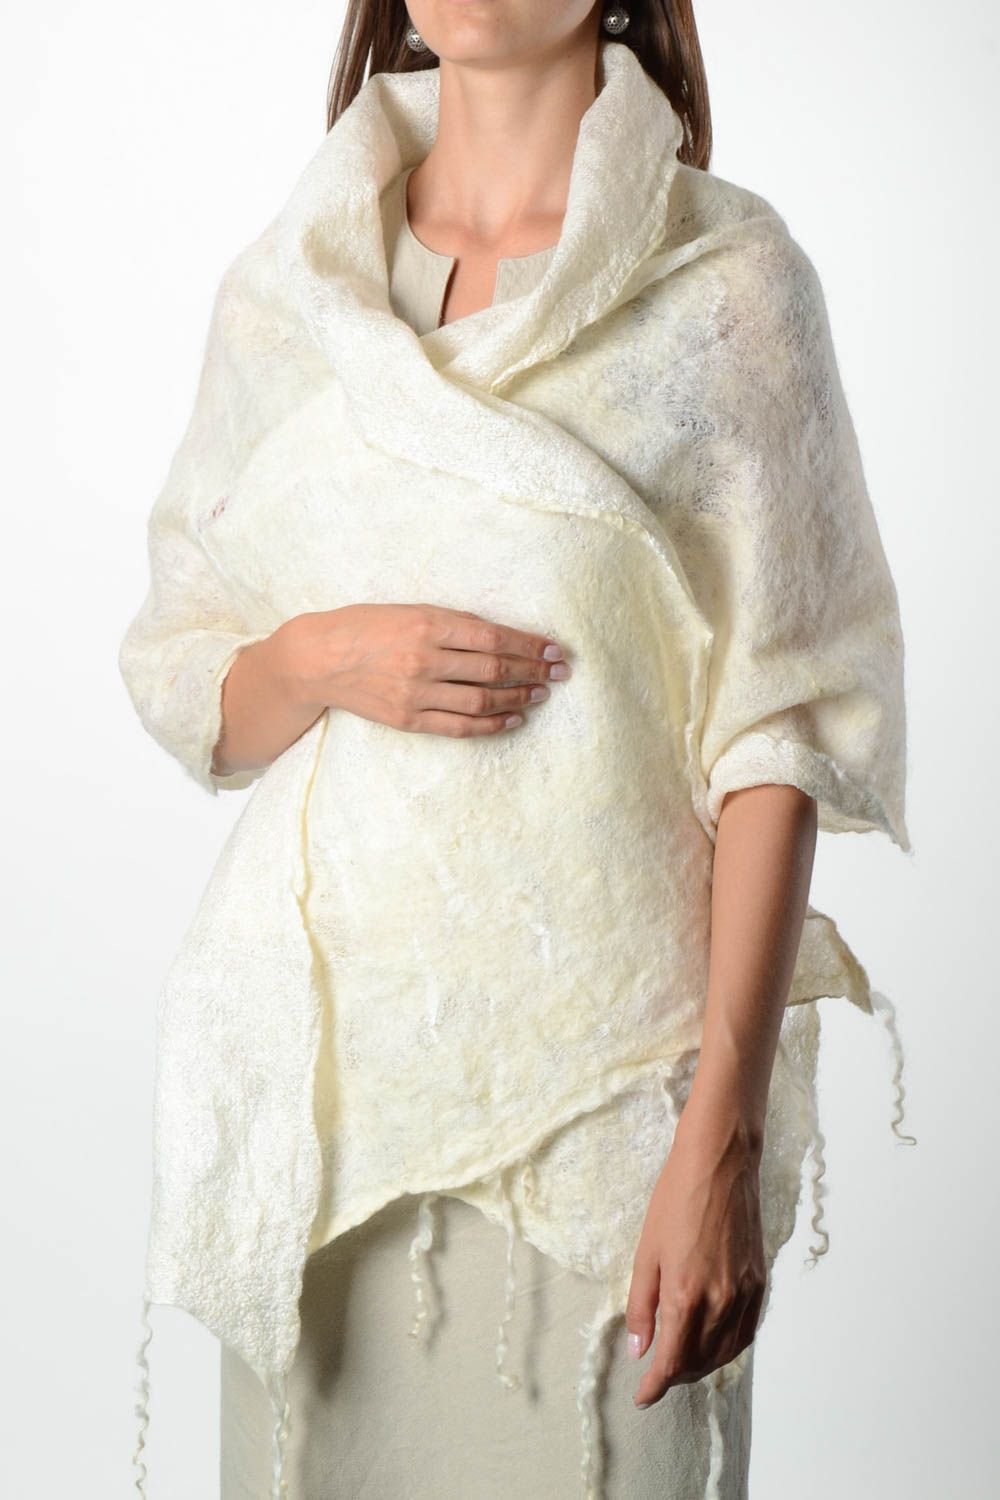 Handmade gefilzter Schal Frauen Accessoire Geschenk für Frau groß hell schön foto 1